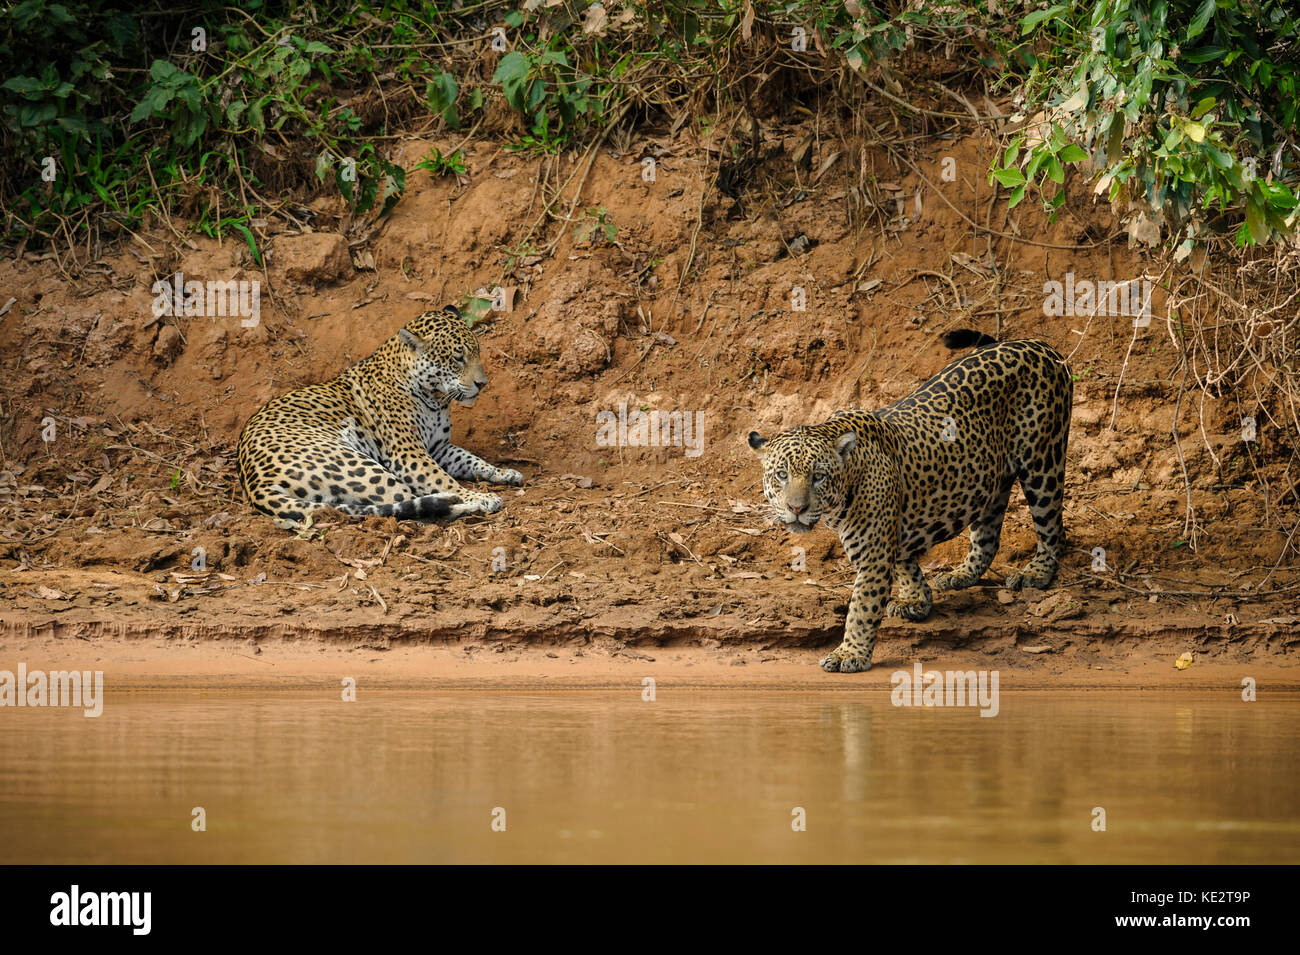 A mating Jaguar pair in the Pantanal, Brazil Stock Photo